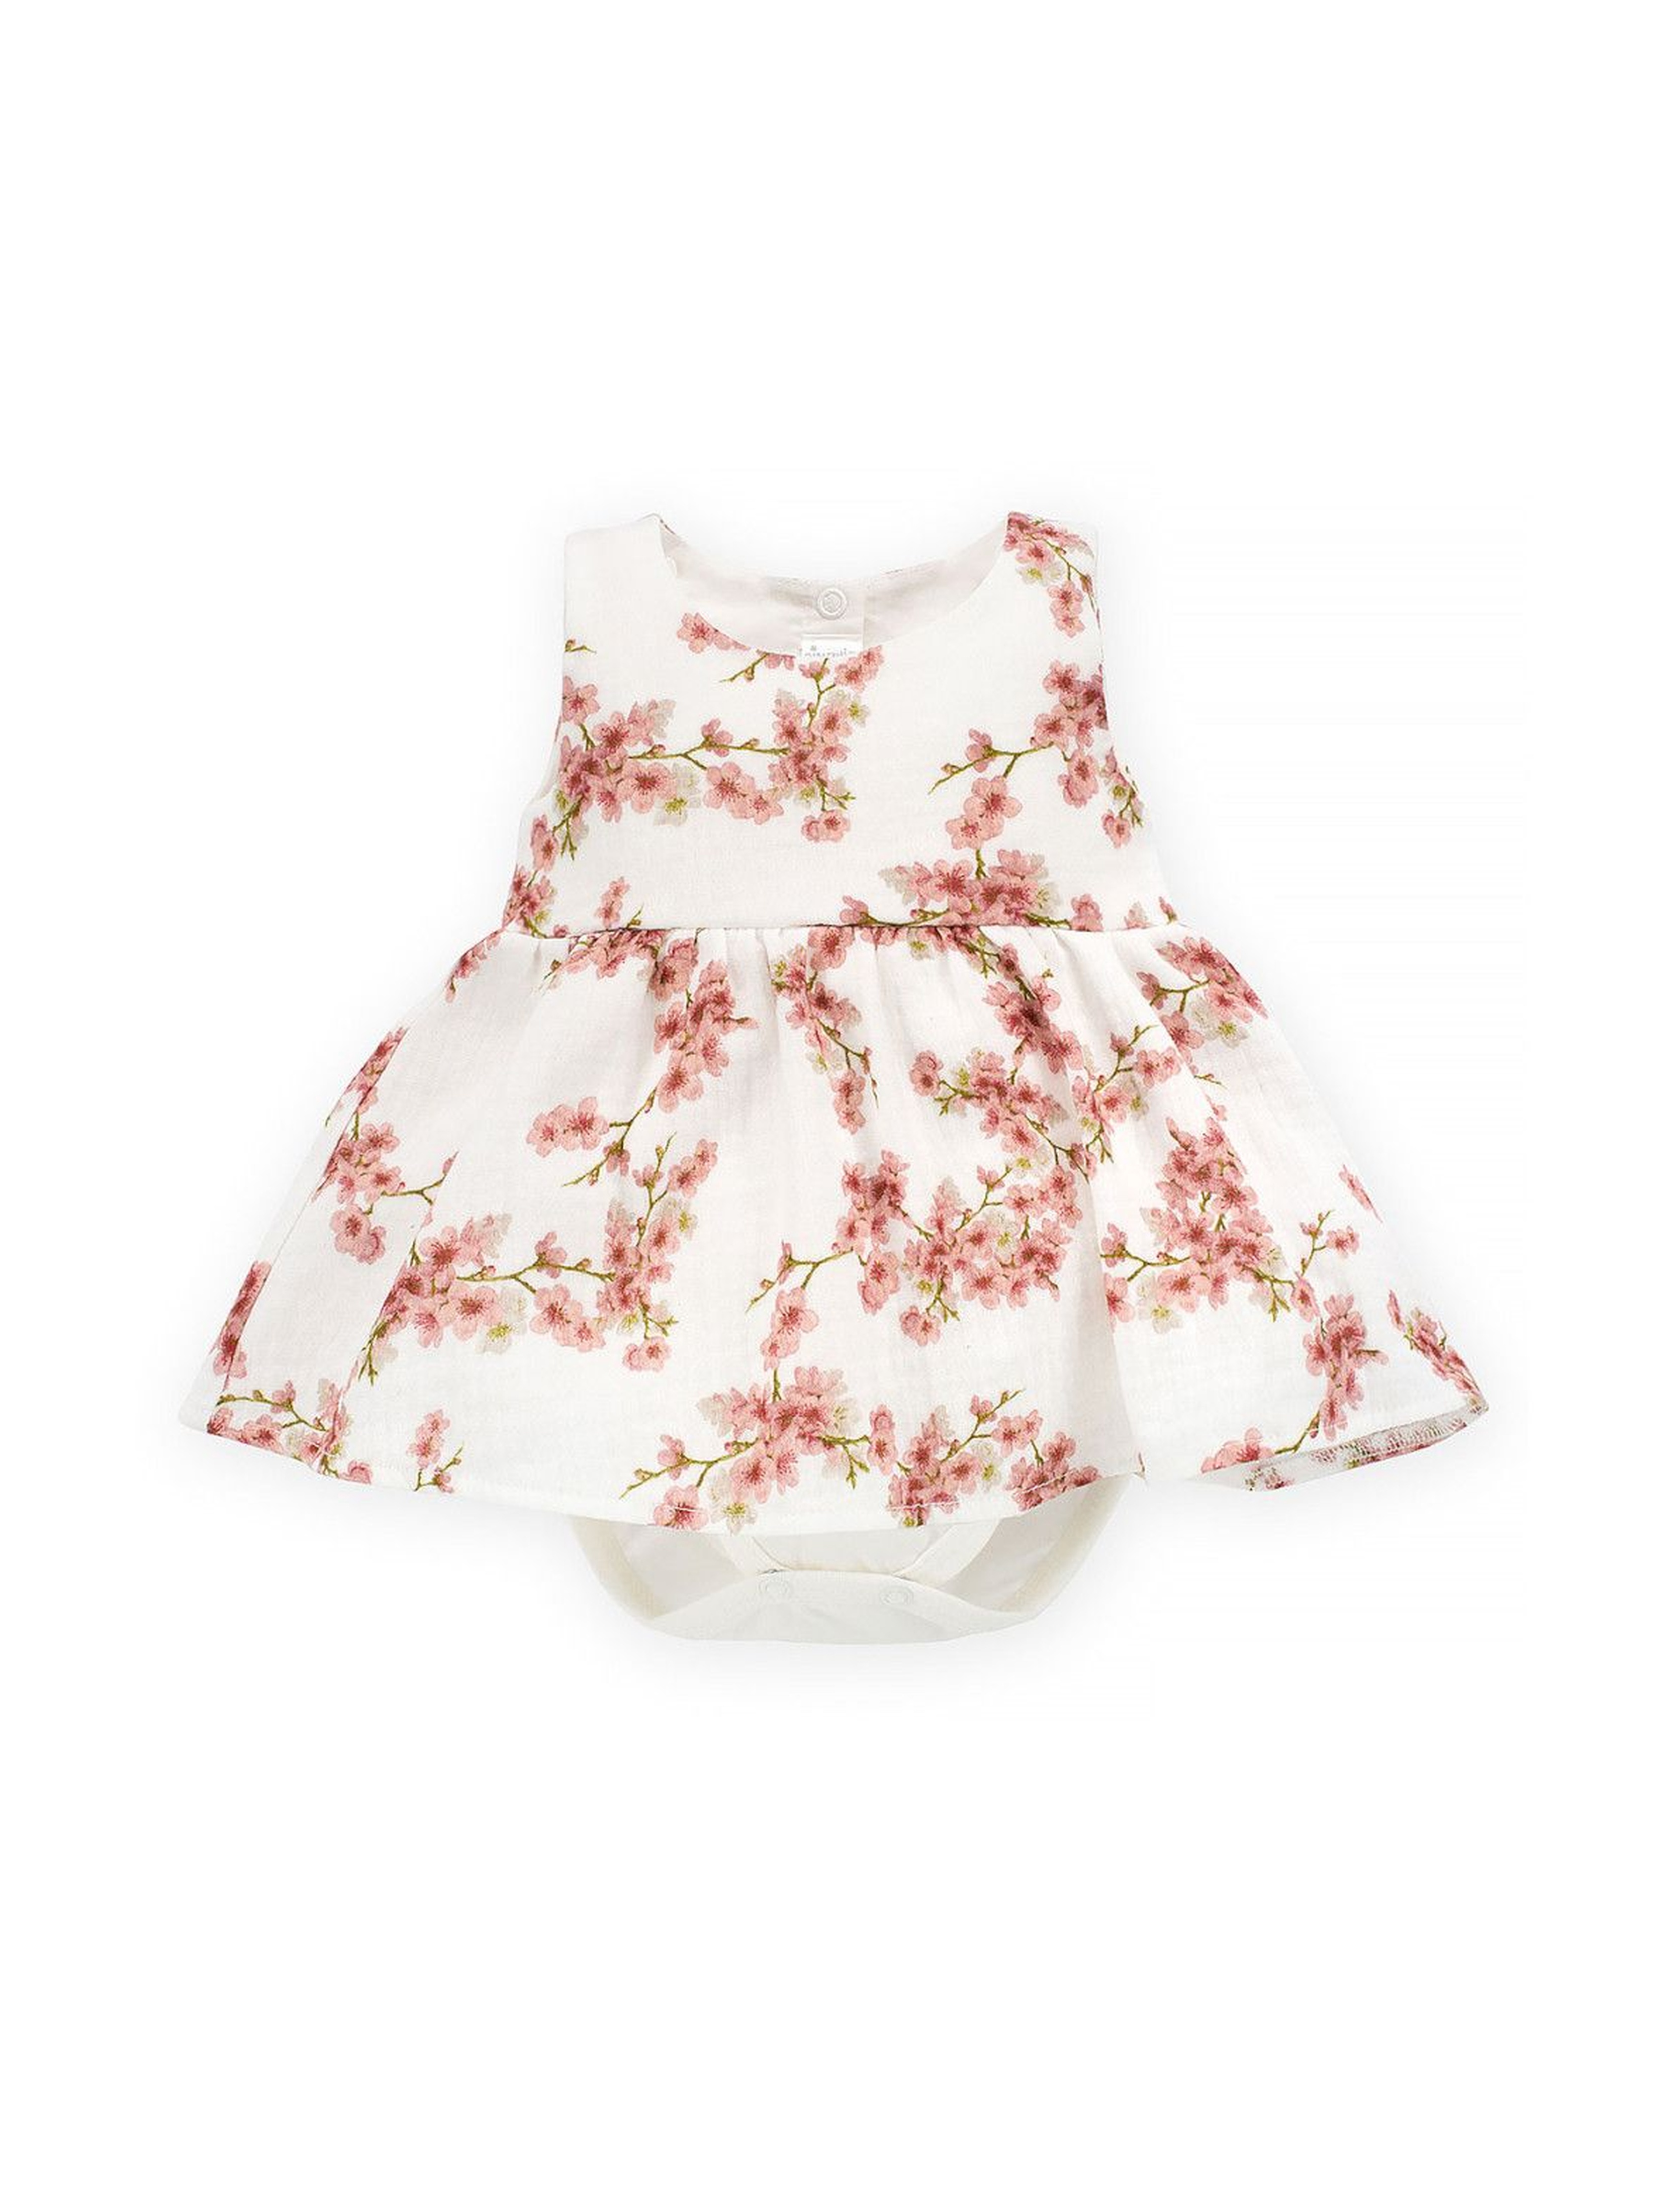 Bawełniane sukienko-body niemowlęce ecru